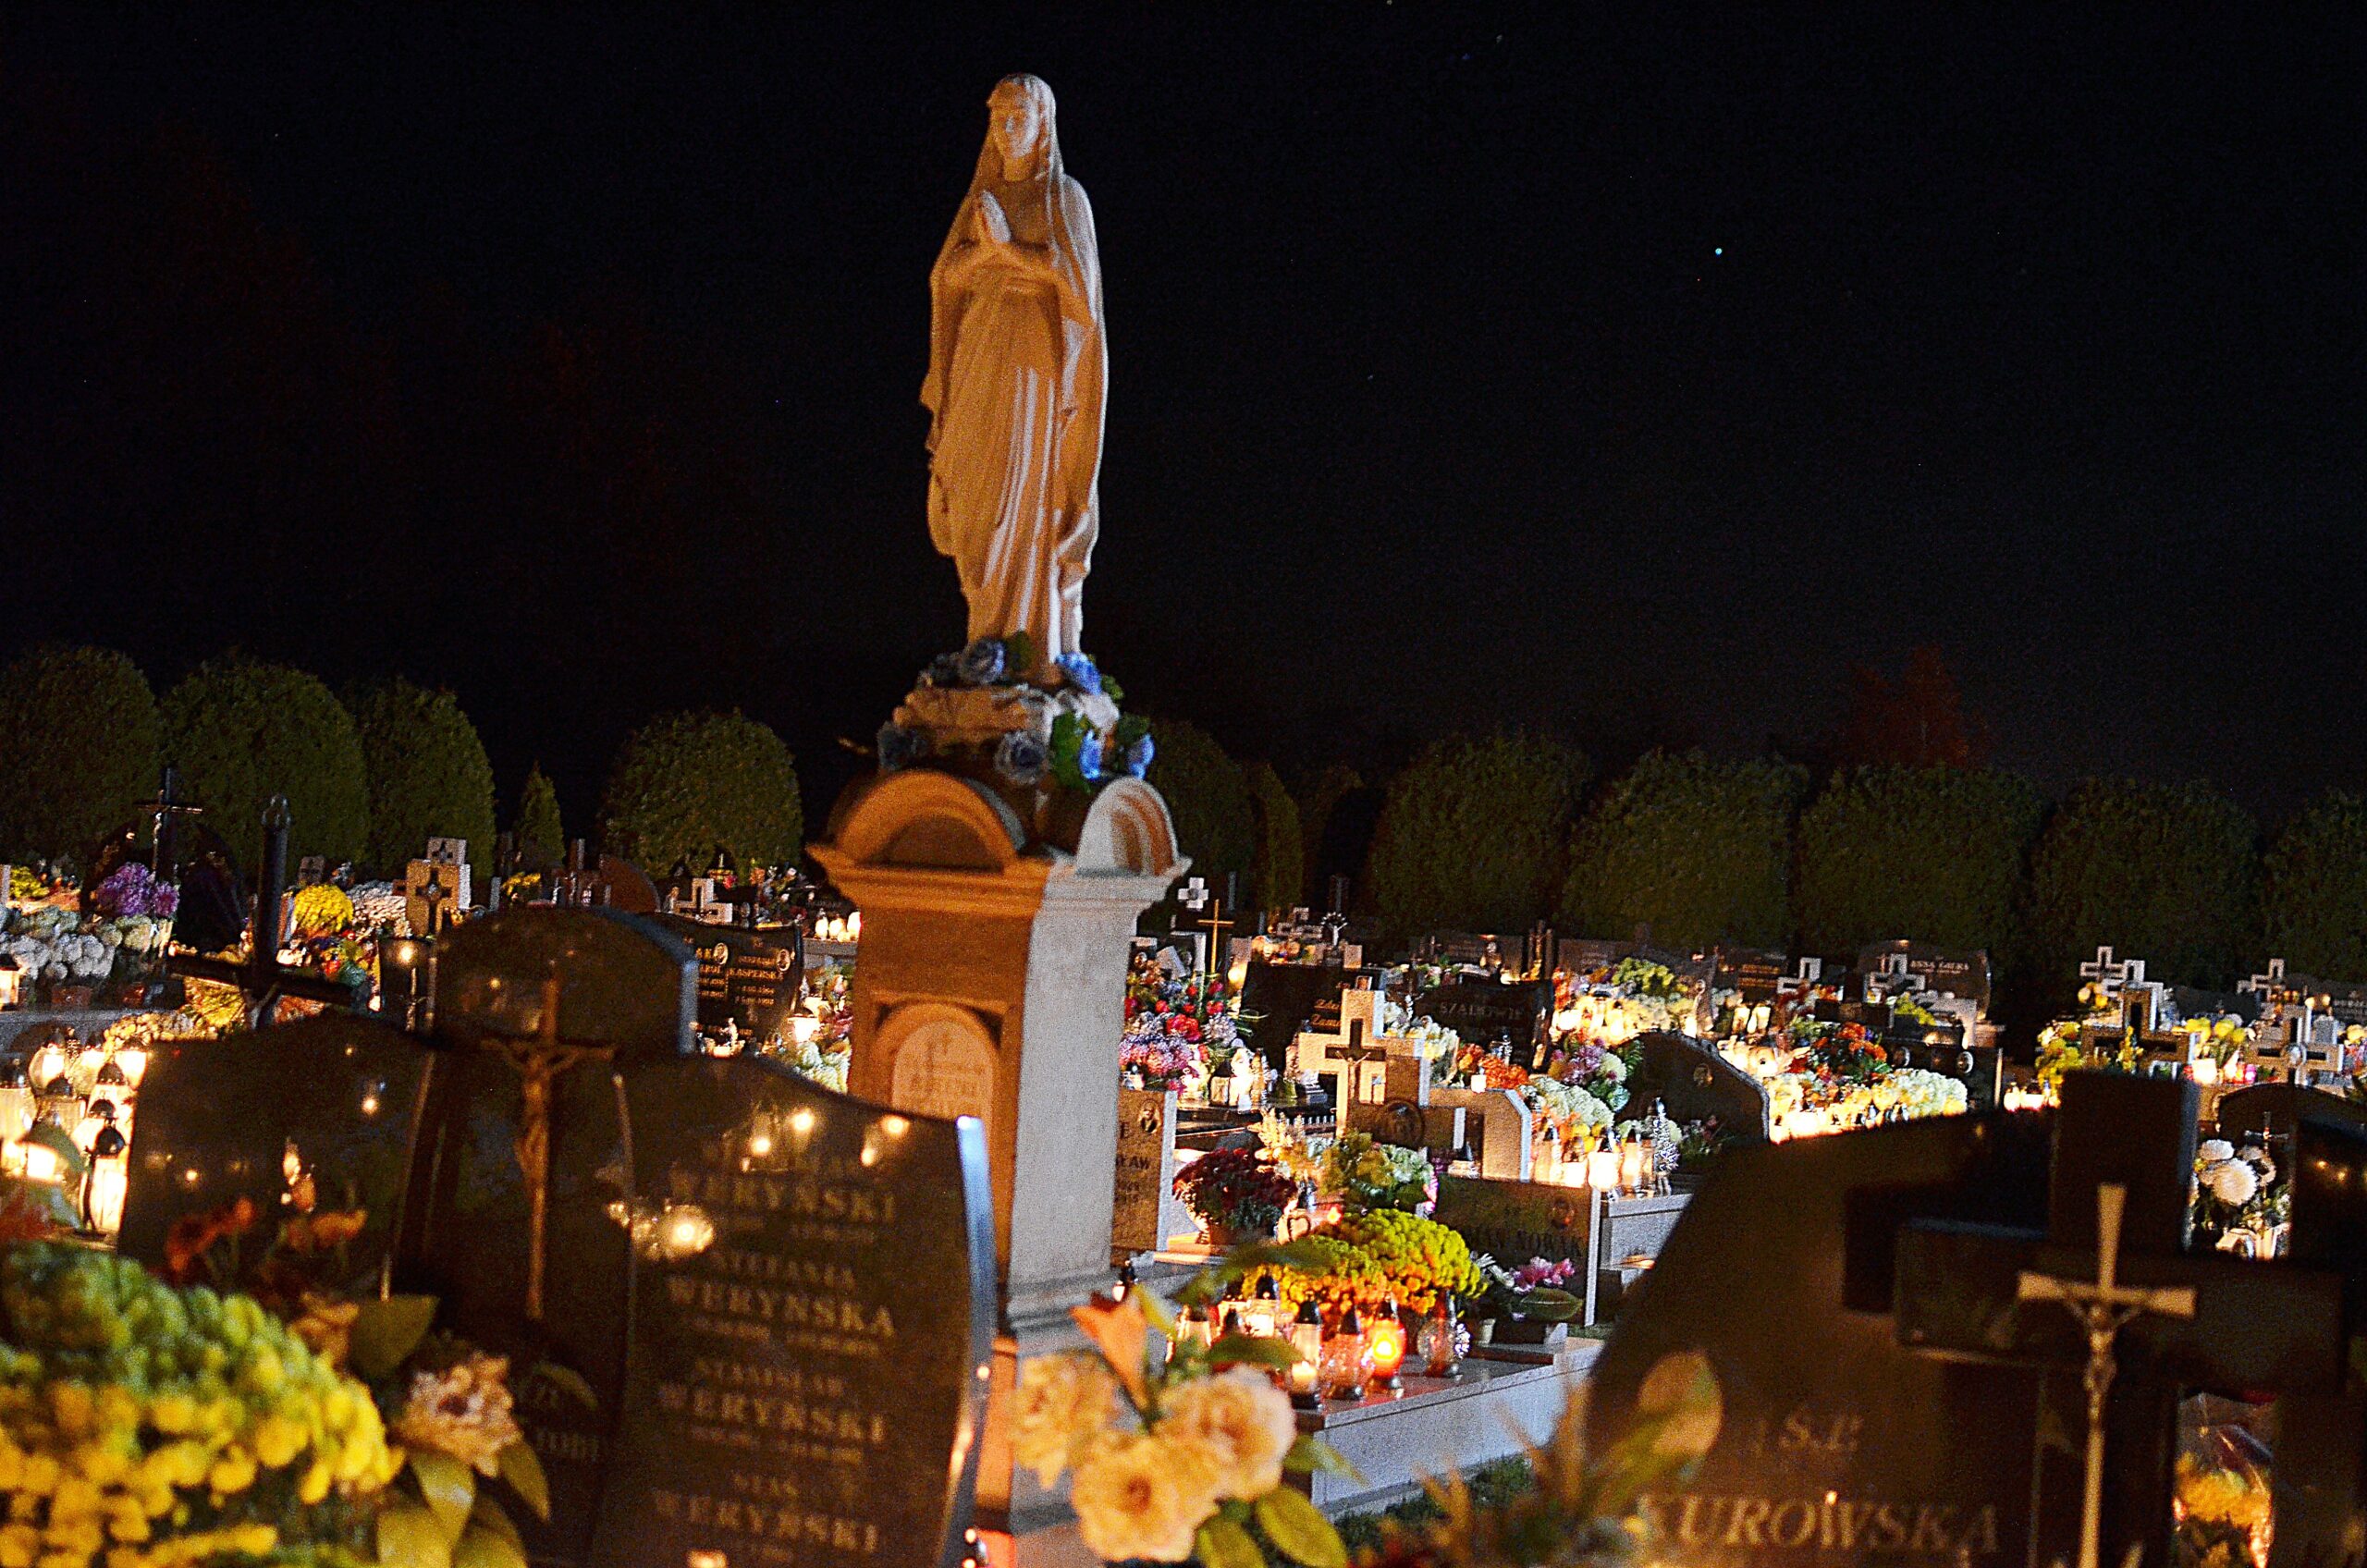 Uroczystość Wszystkich Świętych: Cmentarz parafialny nocą